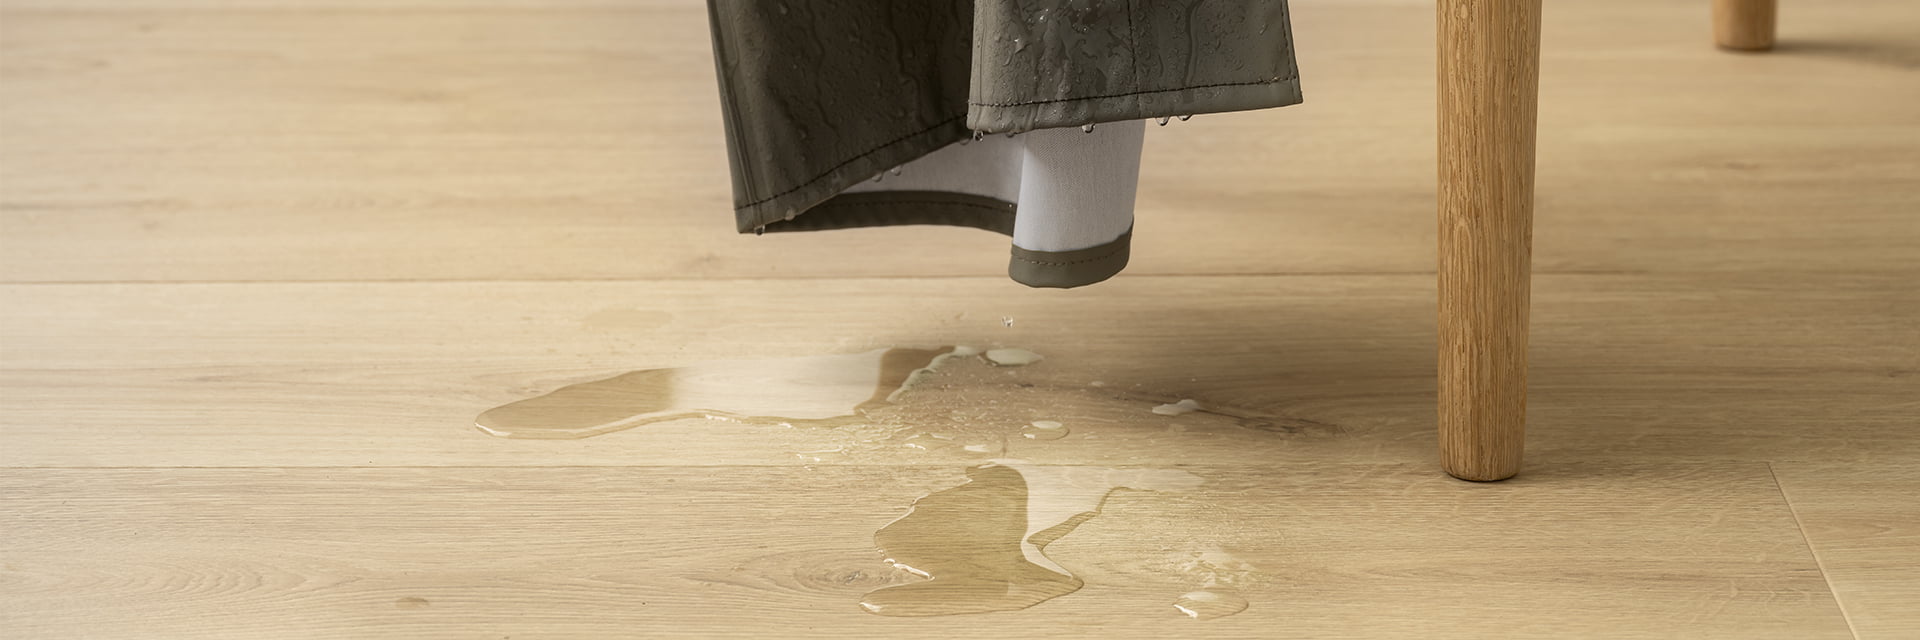 How To Clean Laminate Flooring Pergo